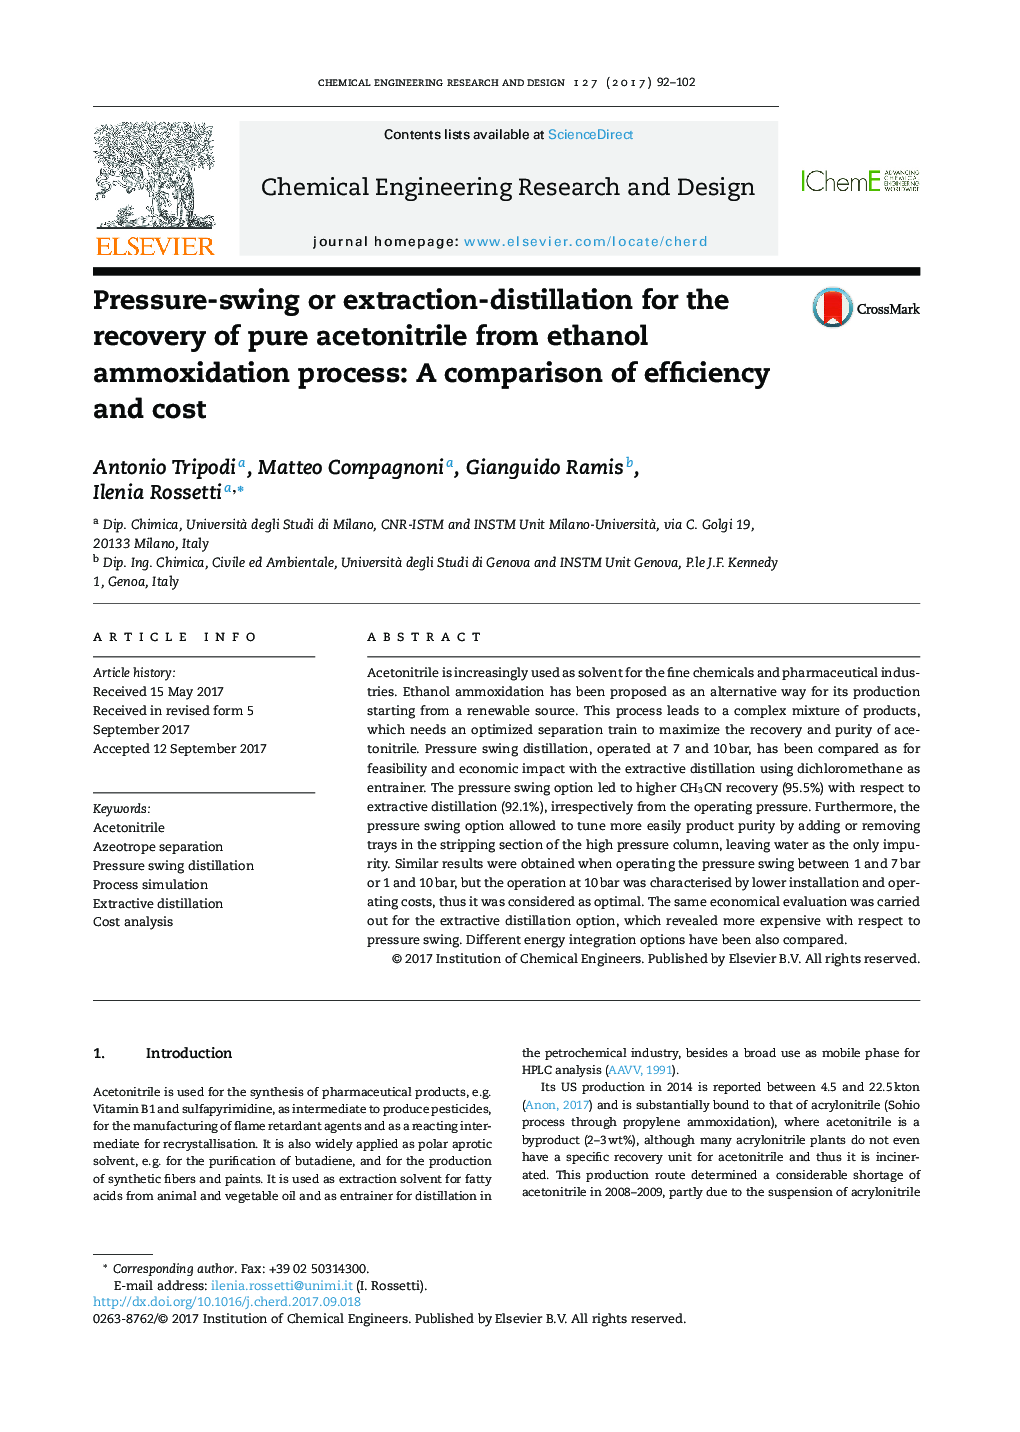 نوسان فشار یا استخراج تقطیر برای بازیابی استونیتریل خالص از فرآیند آمونیوم کردن اتیلن: مقایسه کارایی و هزینه 